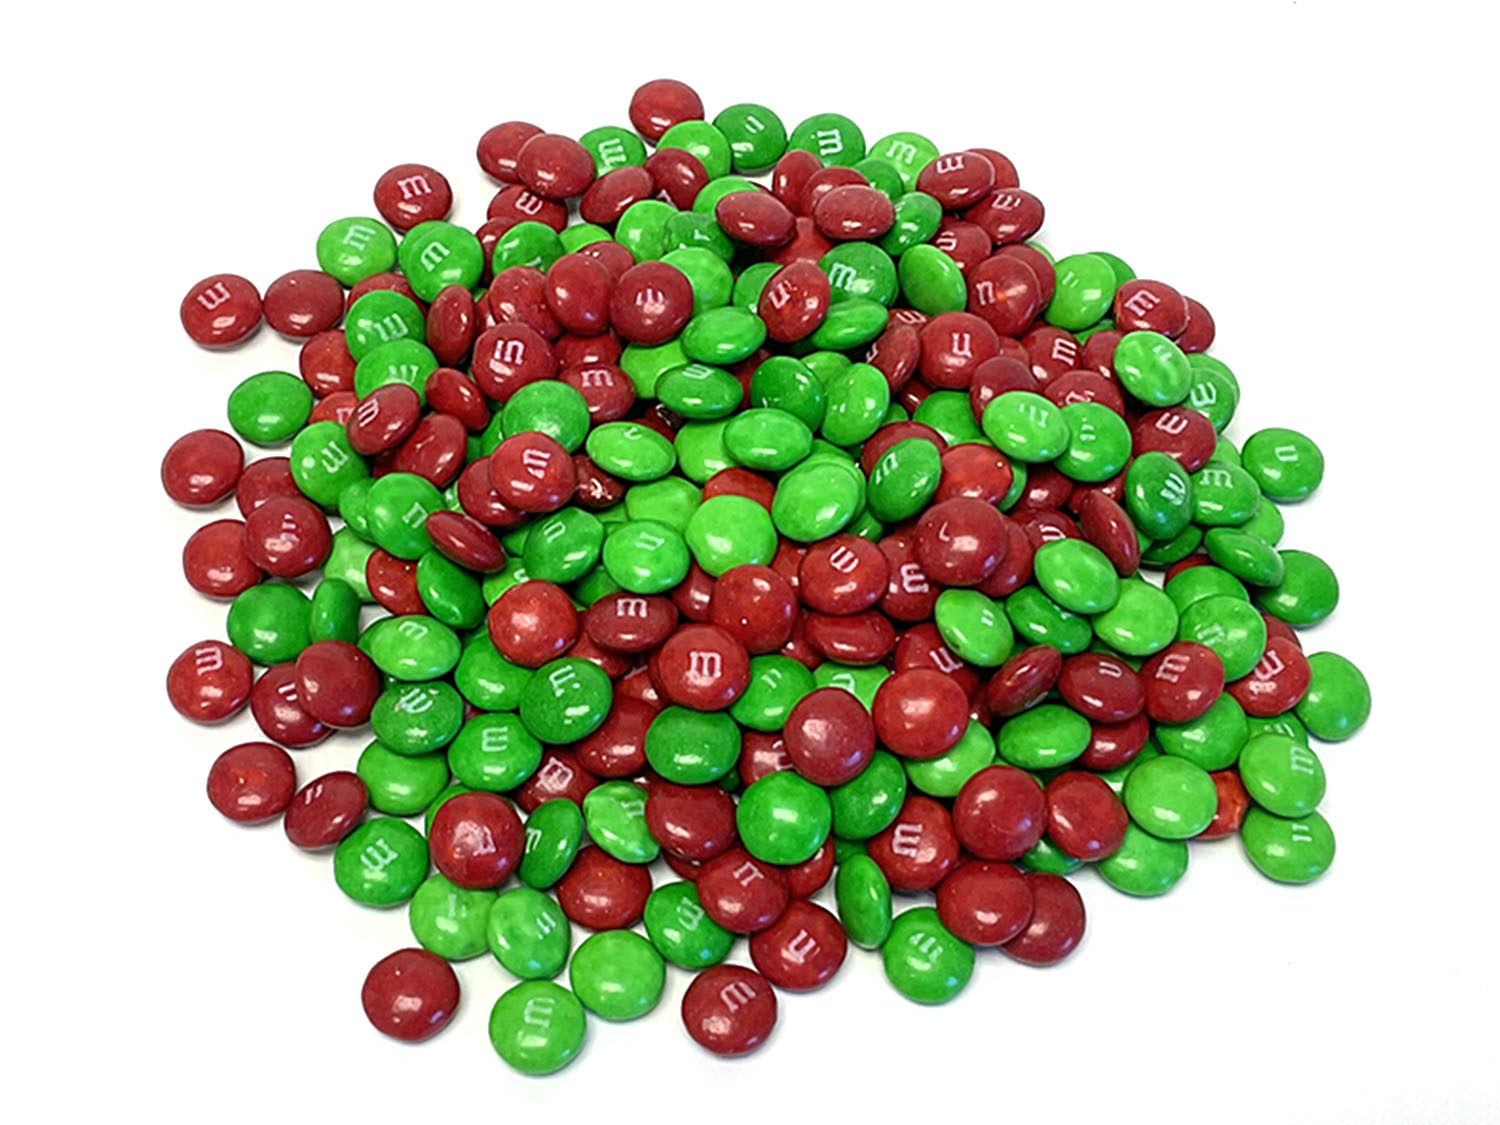 Red and Green M&M's Are the Best M&M's, Here's Why